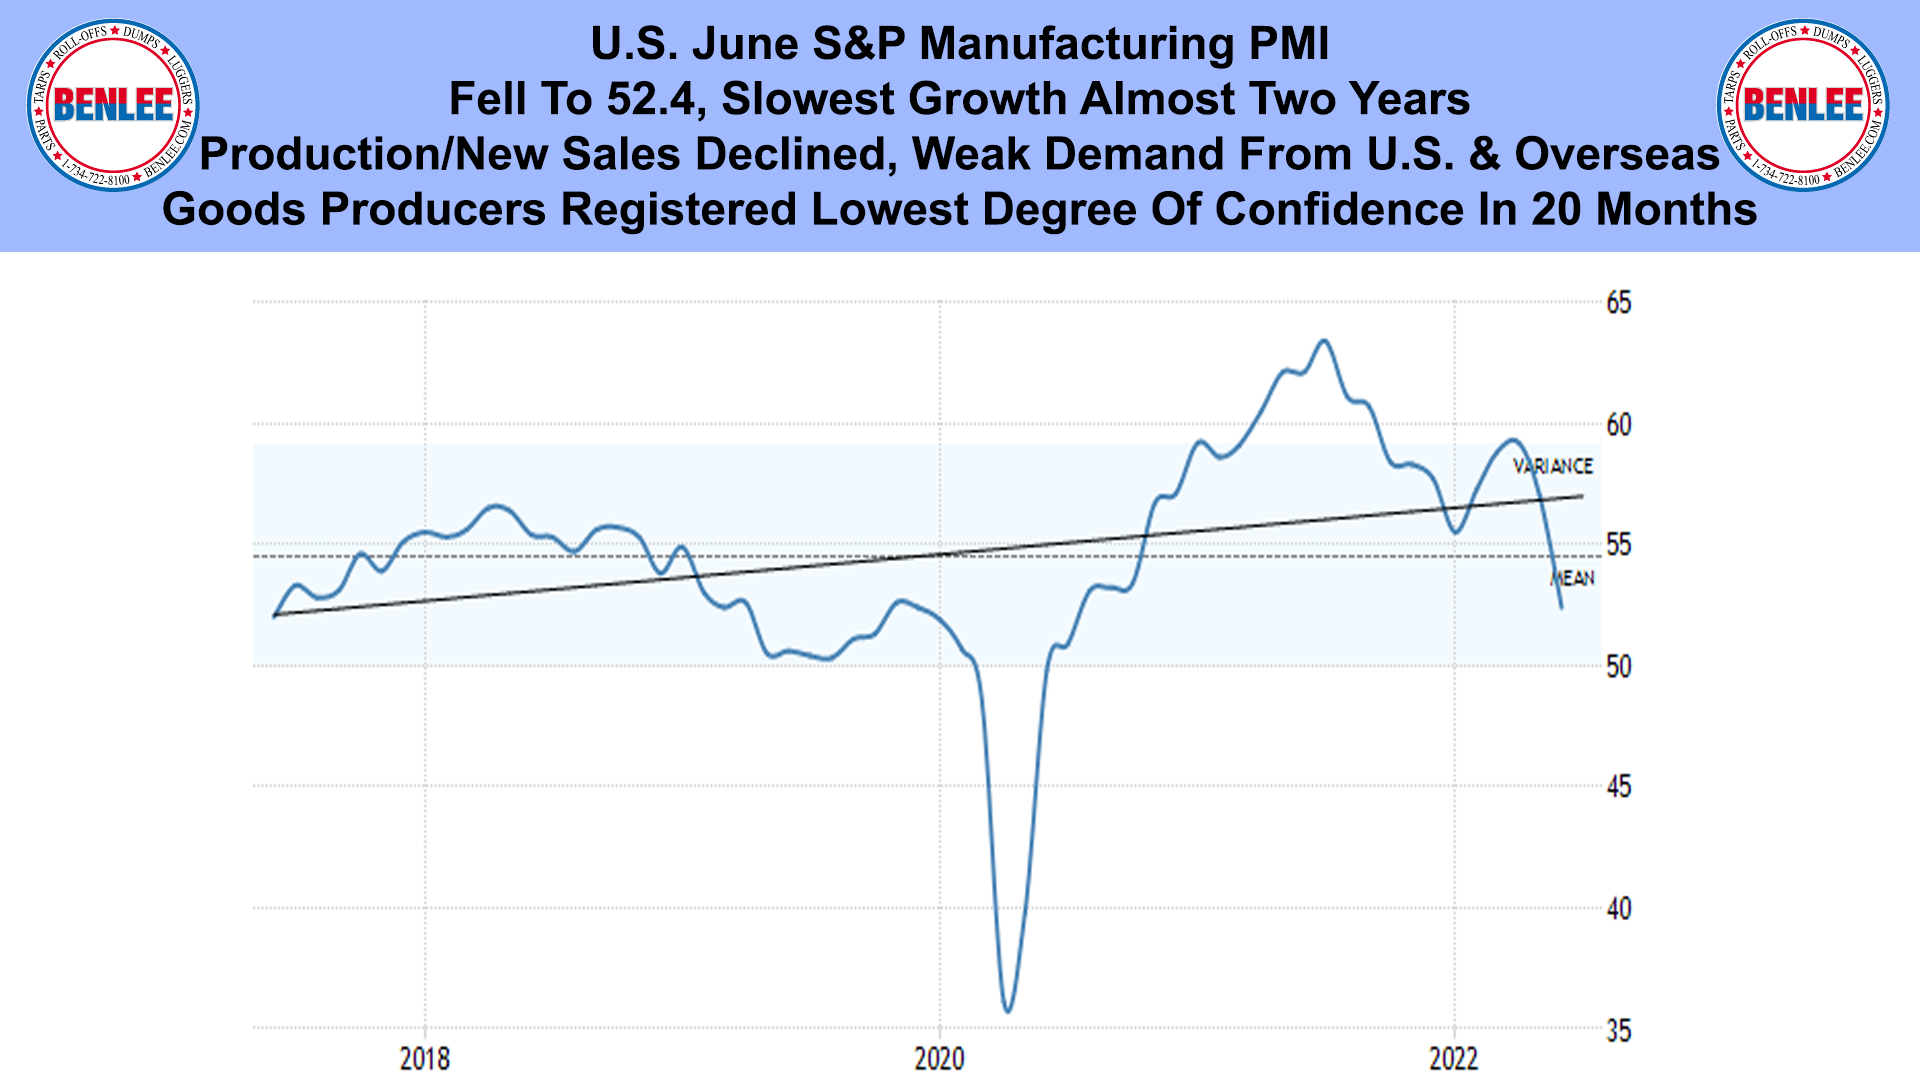 U.S. June S&P Manufacturing PMI